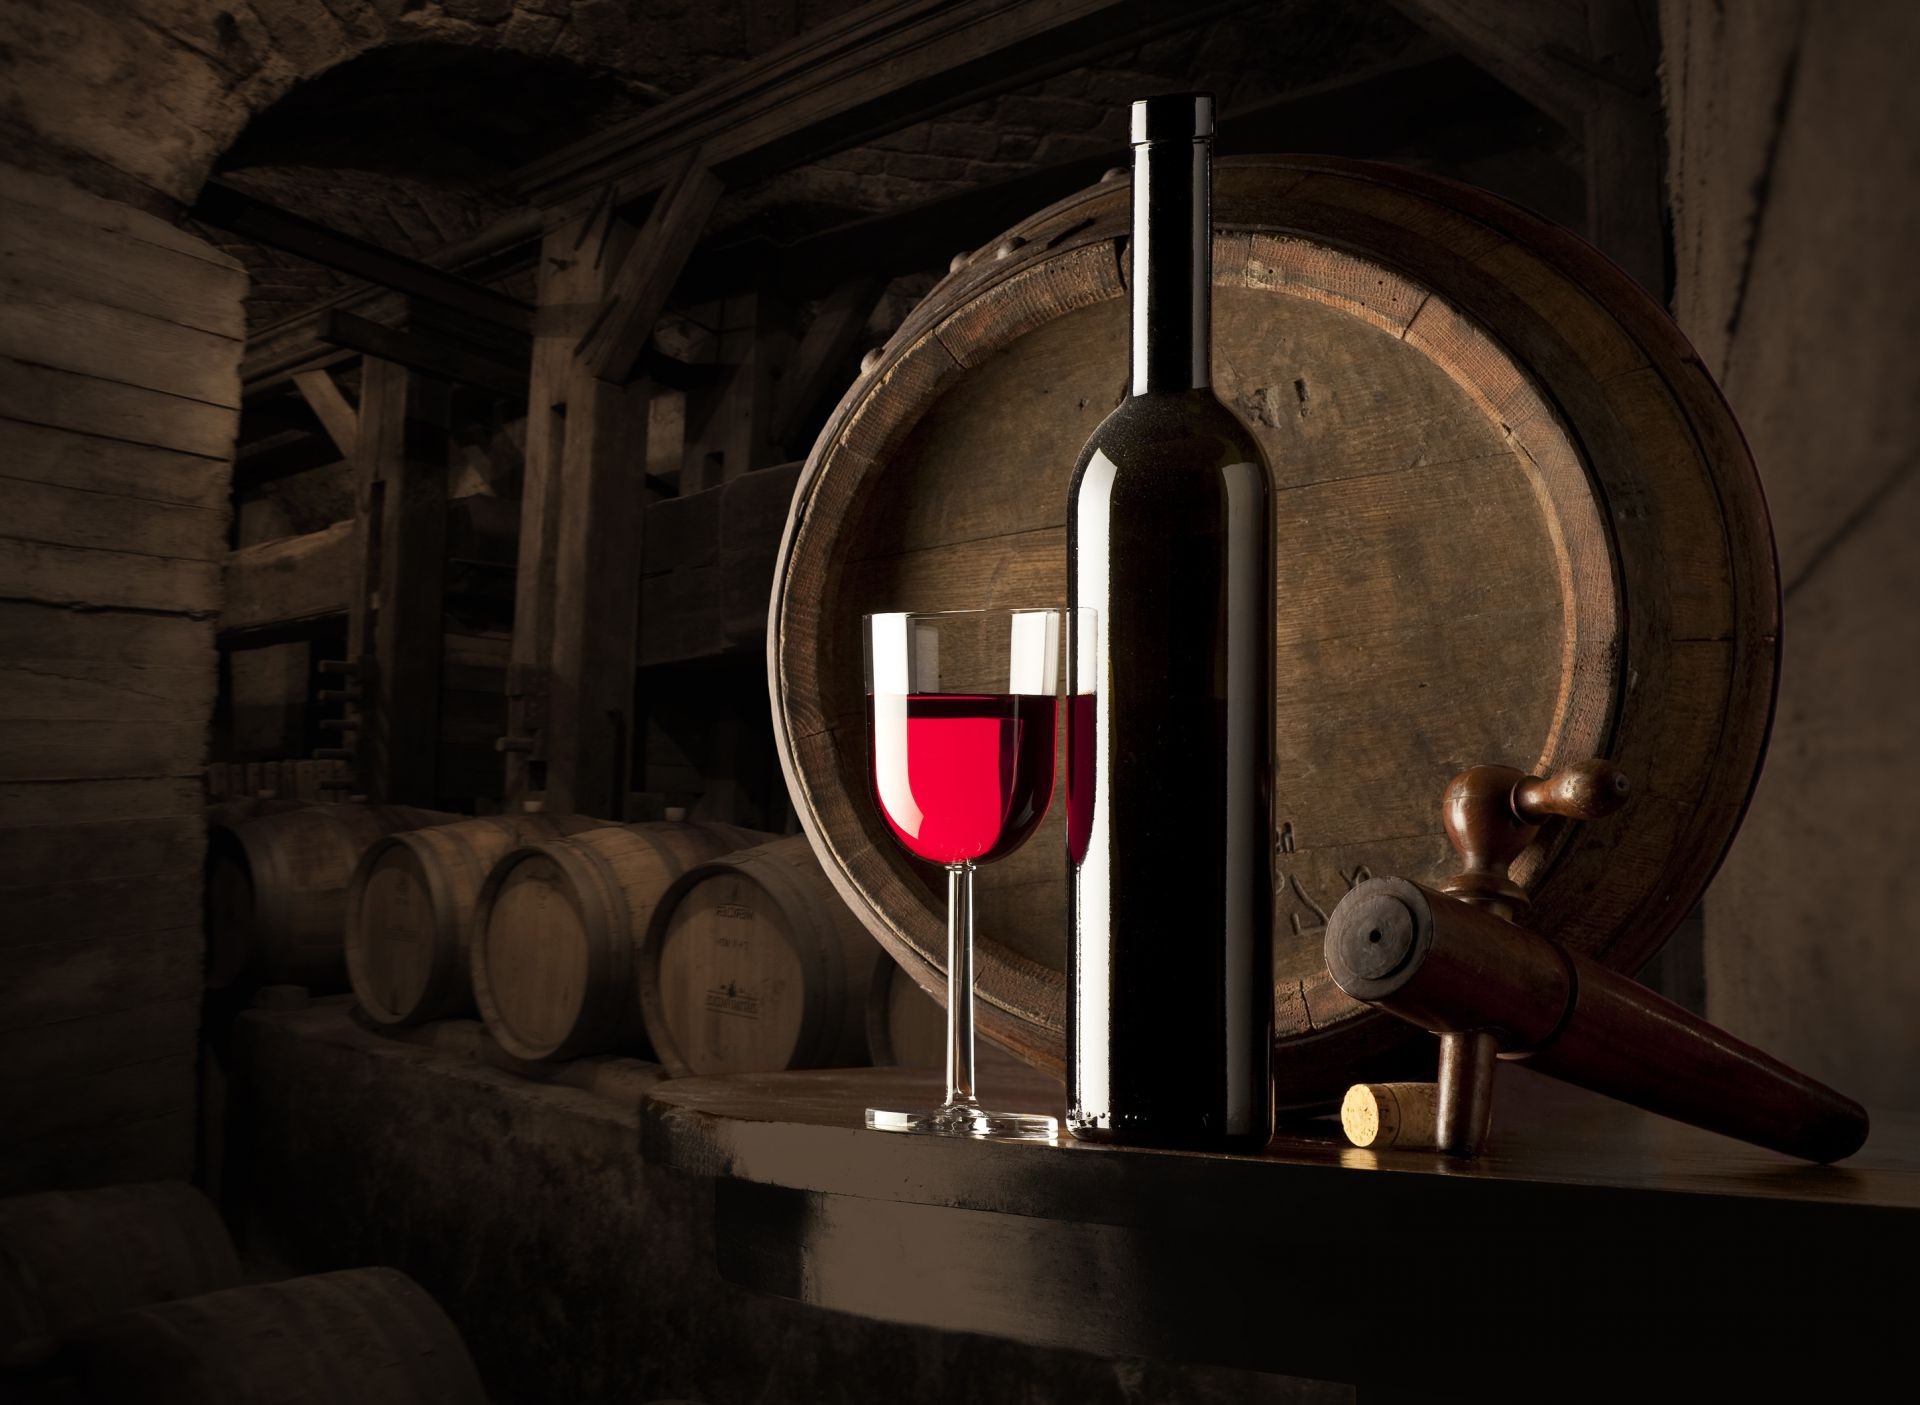 креатив винзавод баррель вина подвал винтаж старый в помещении алкоголь древесины промышленность точильщик бар кег